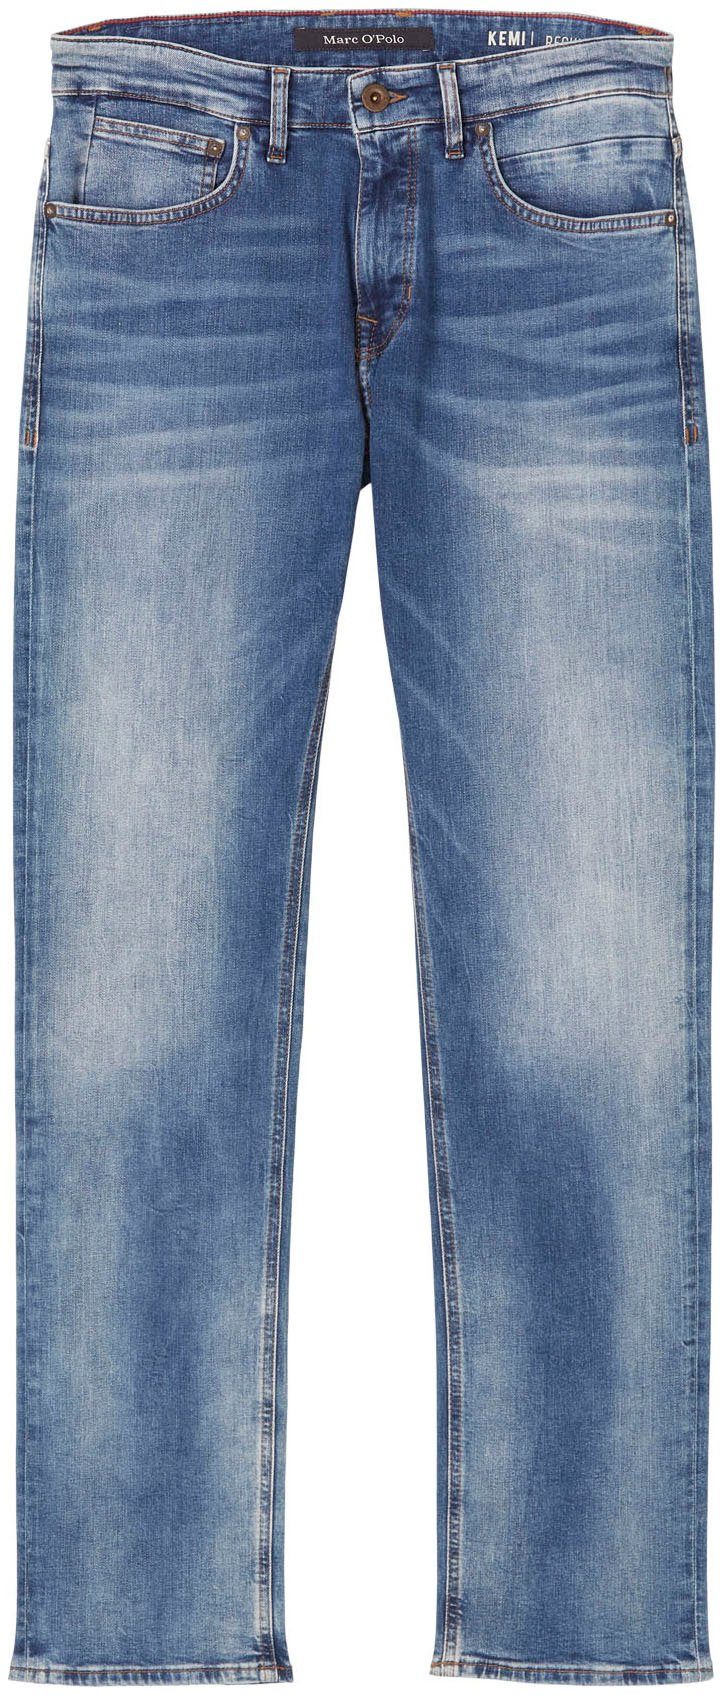 O'Polo Kemi Stretch-Jeans Marc